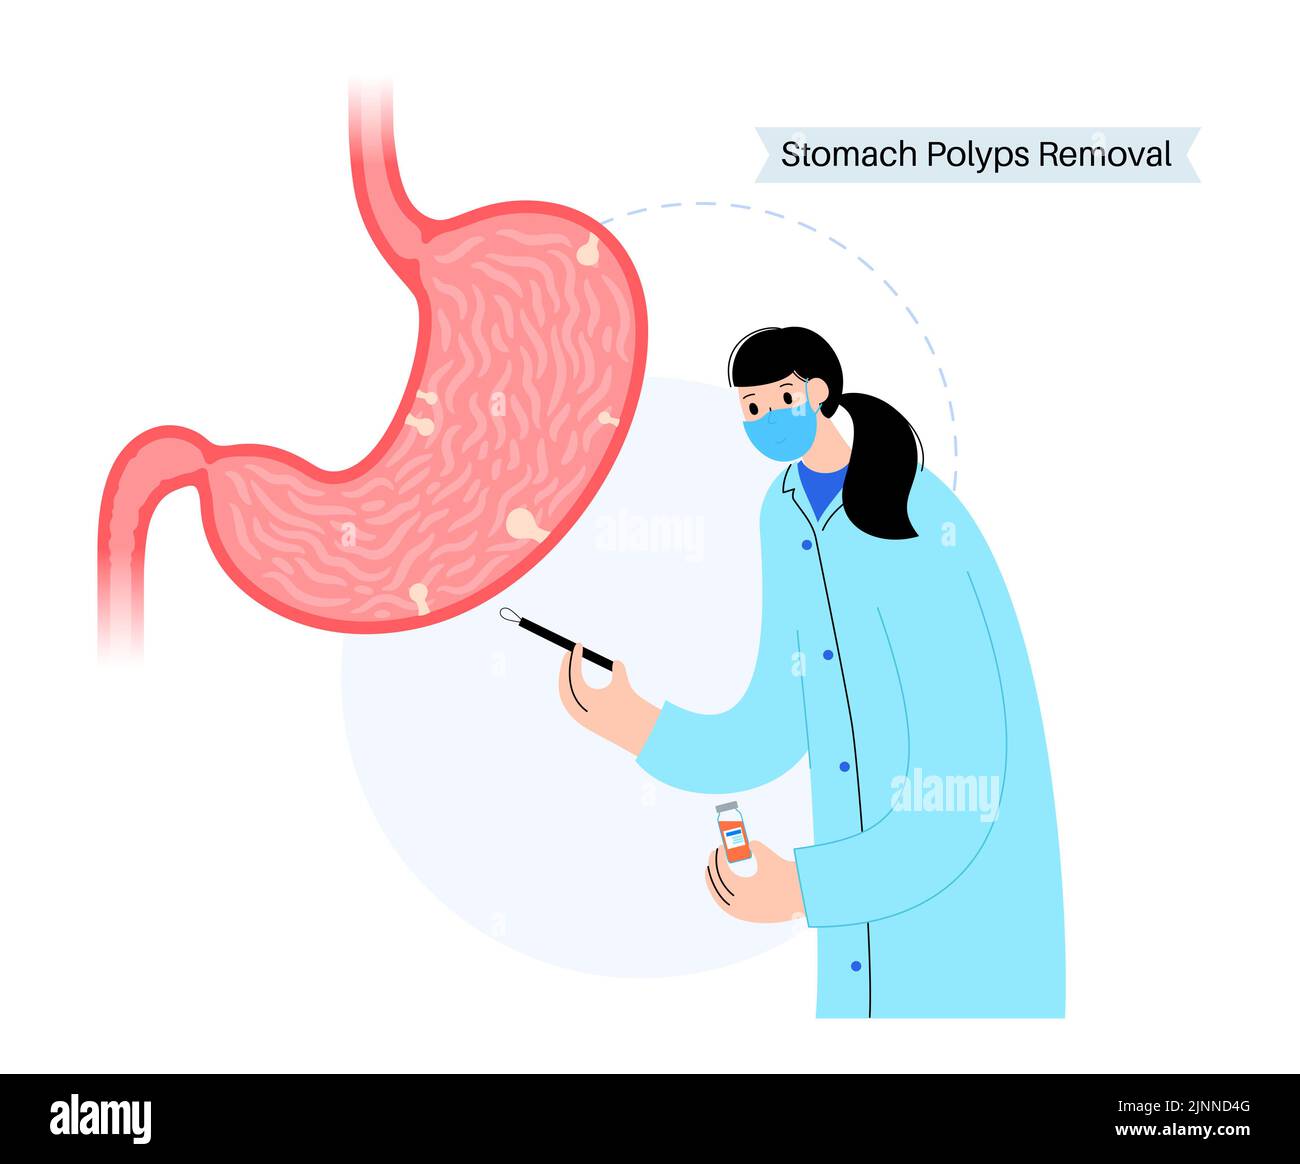 Extracción de pólipos estomacales, ilustración. Foto de stock